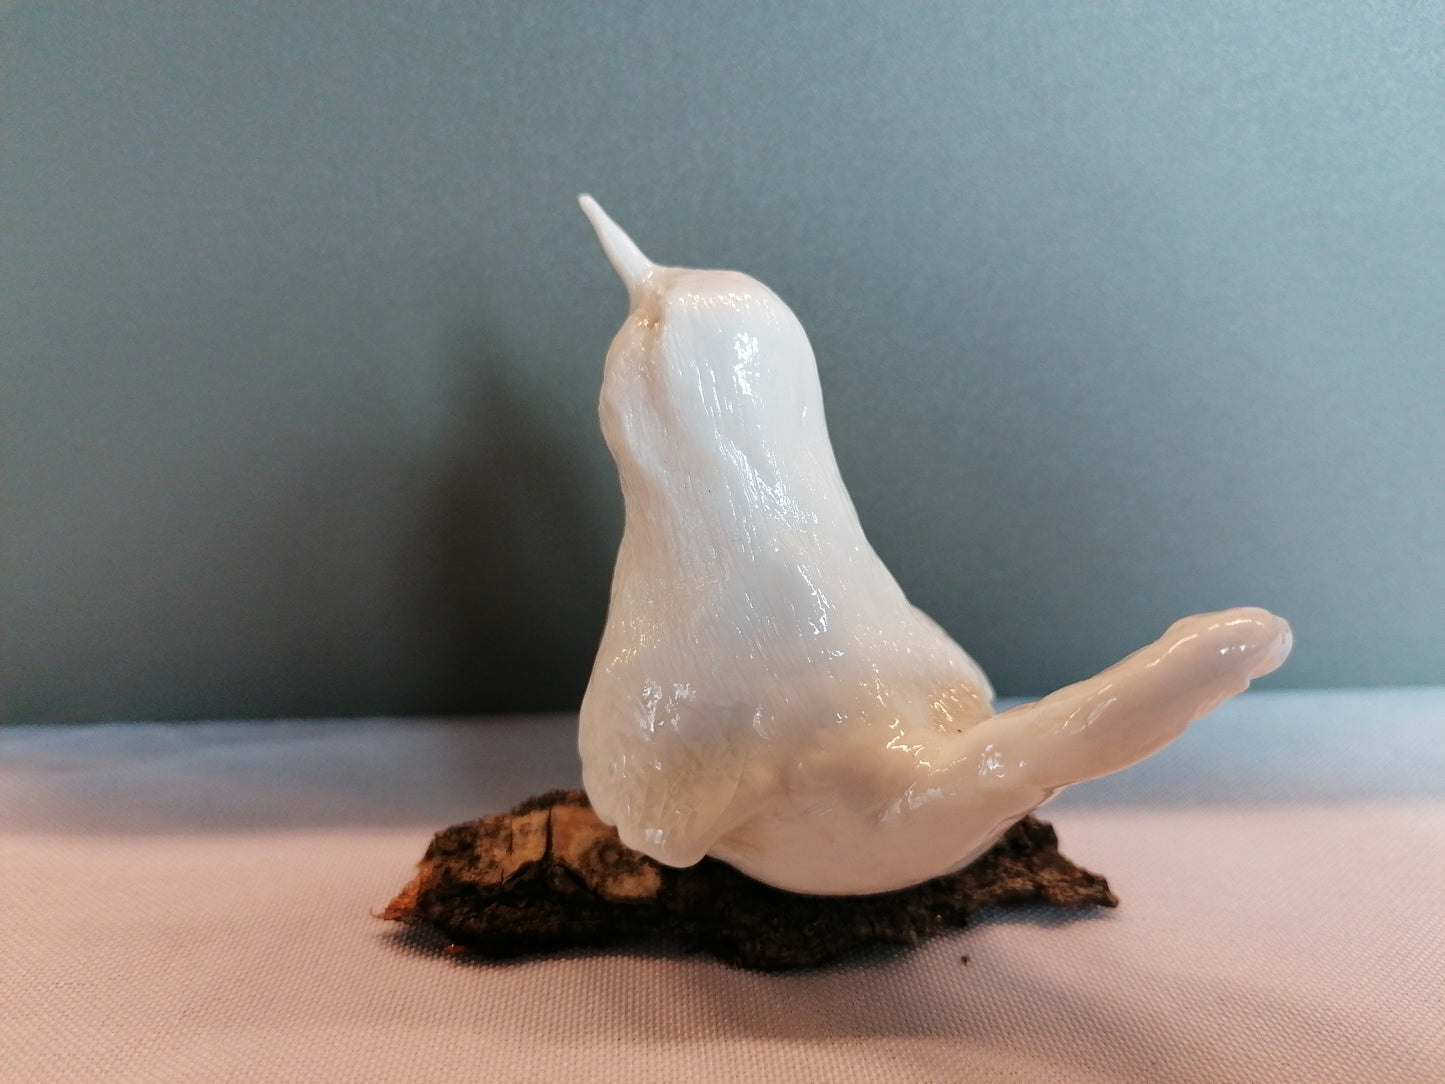 Oiseau de porcelaine n °9 by Sandrine De Zorzi